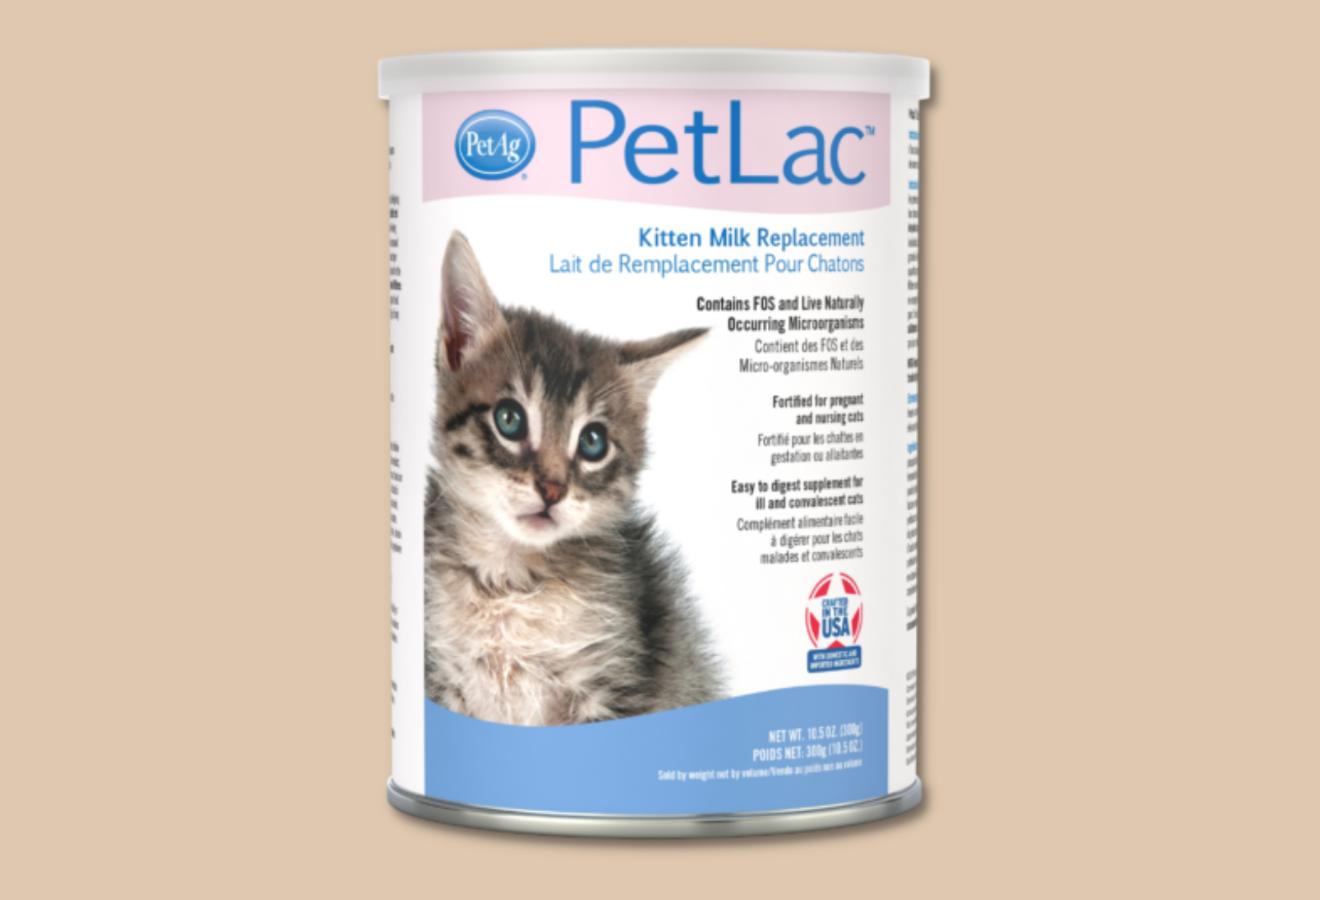 Petlac - Sữa Bột Cho Mèo